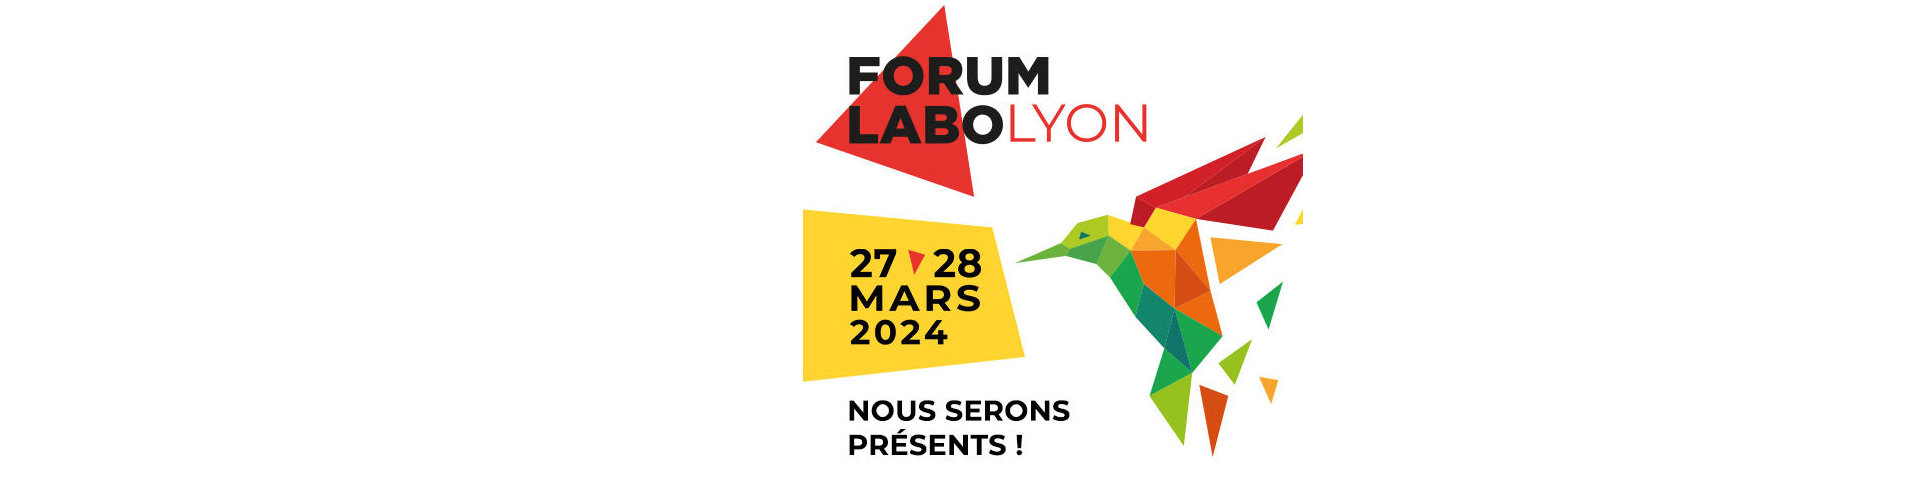 FORUM LABO Lyon 2024